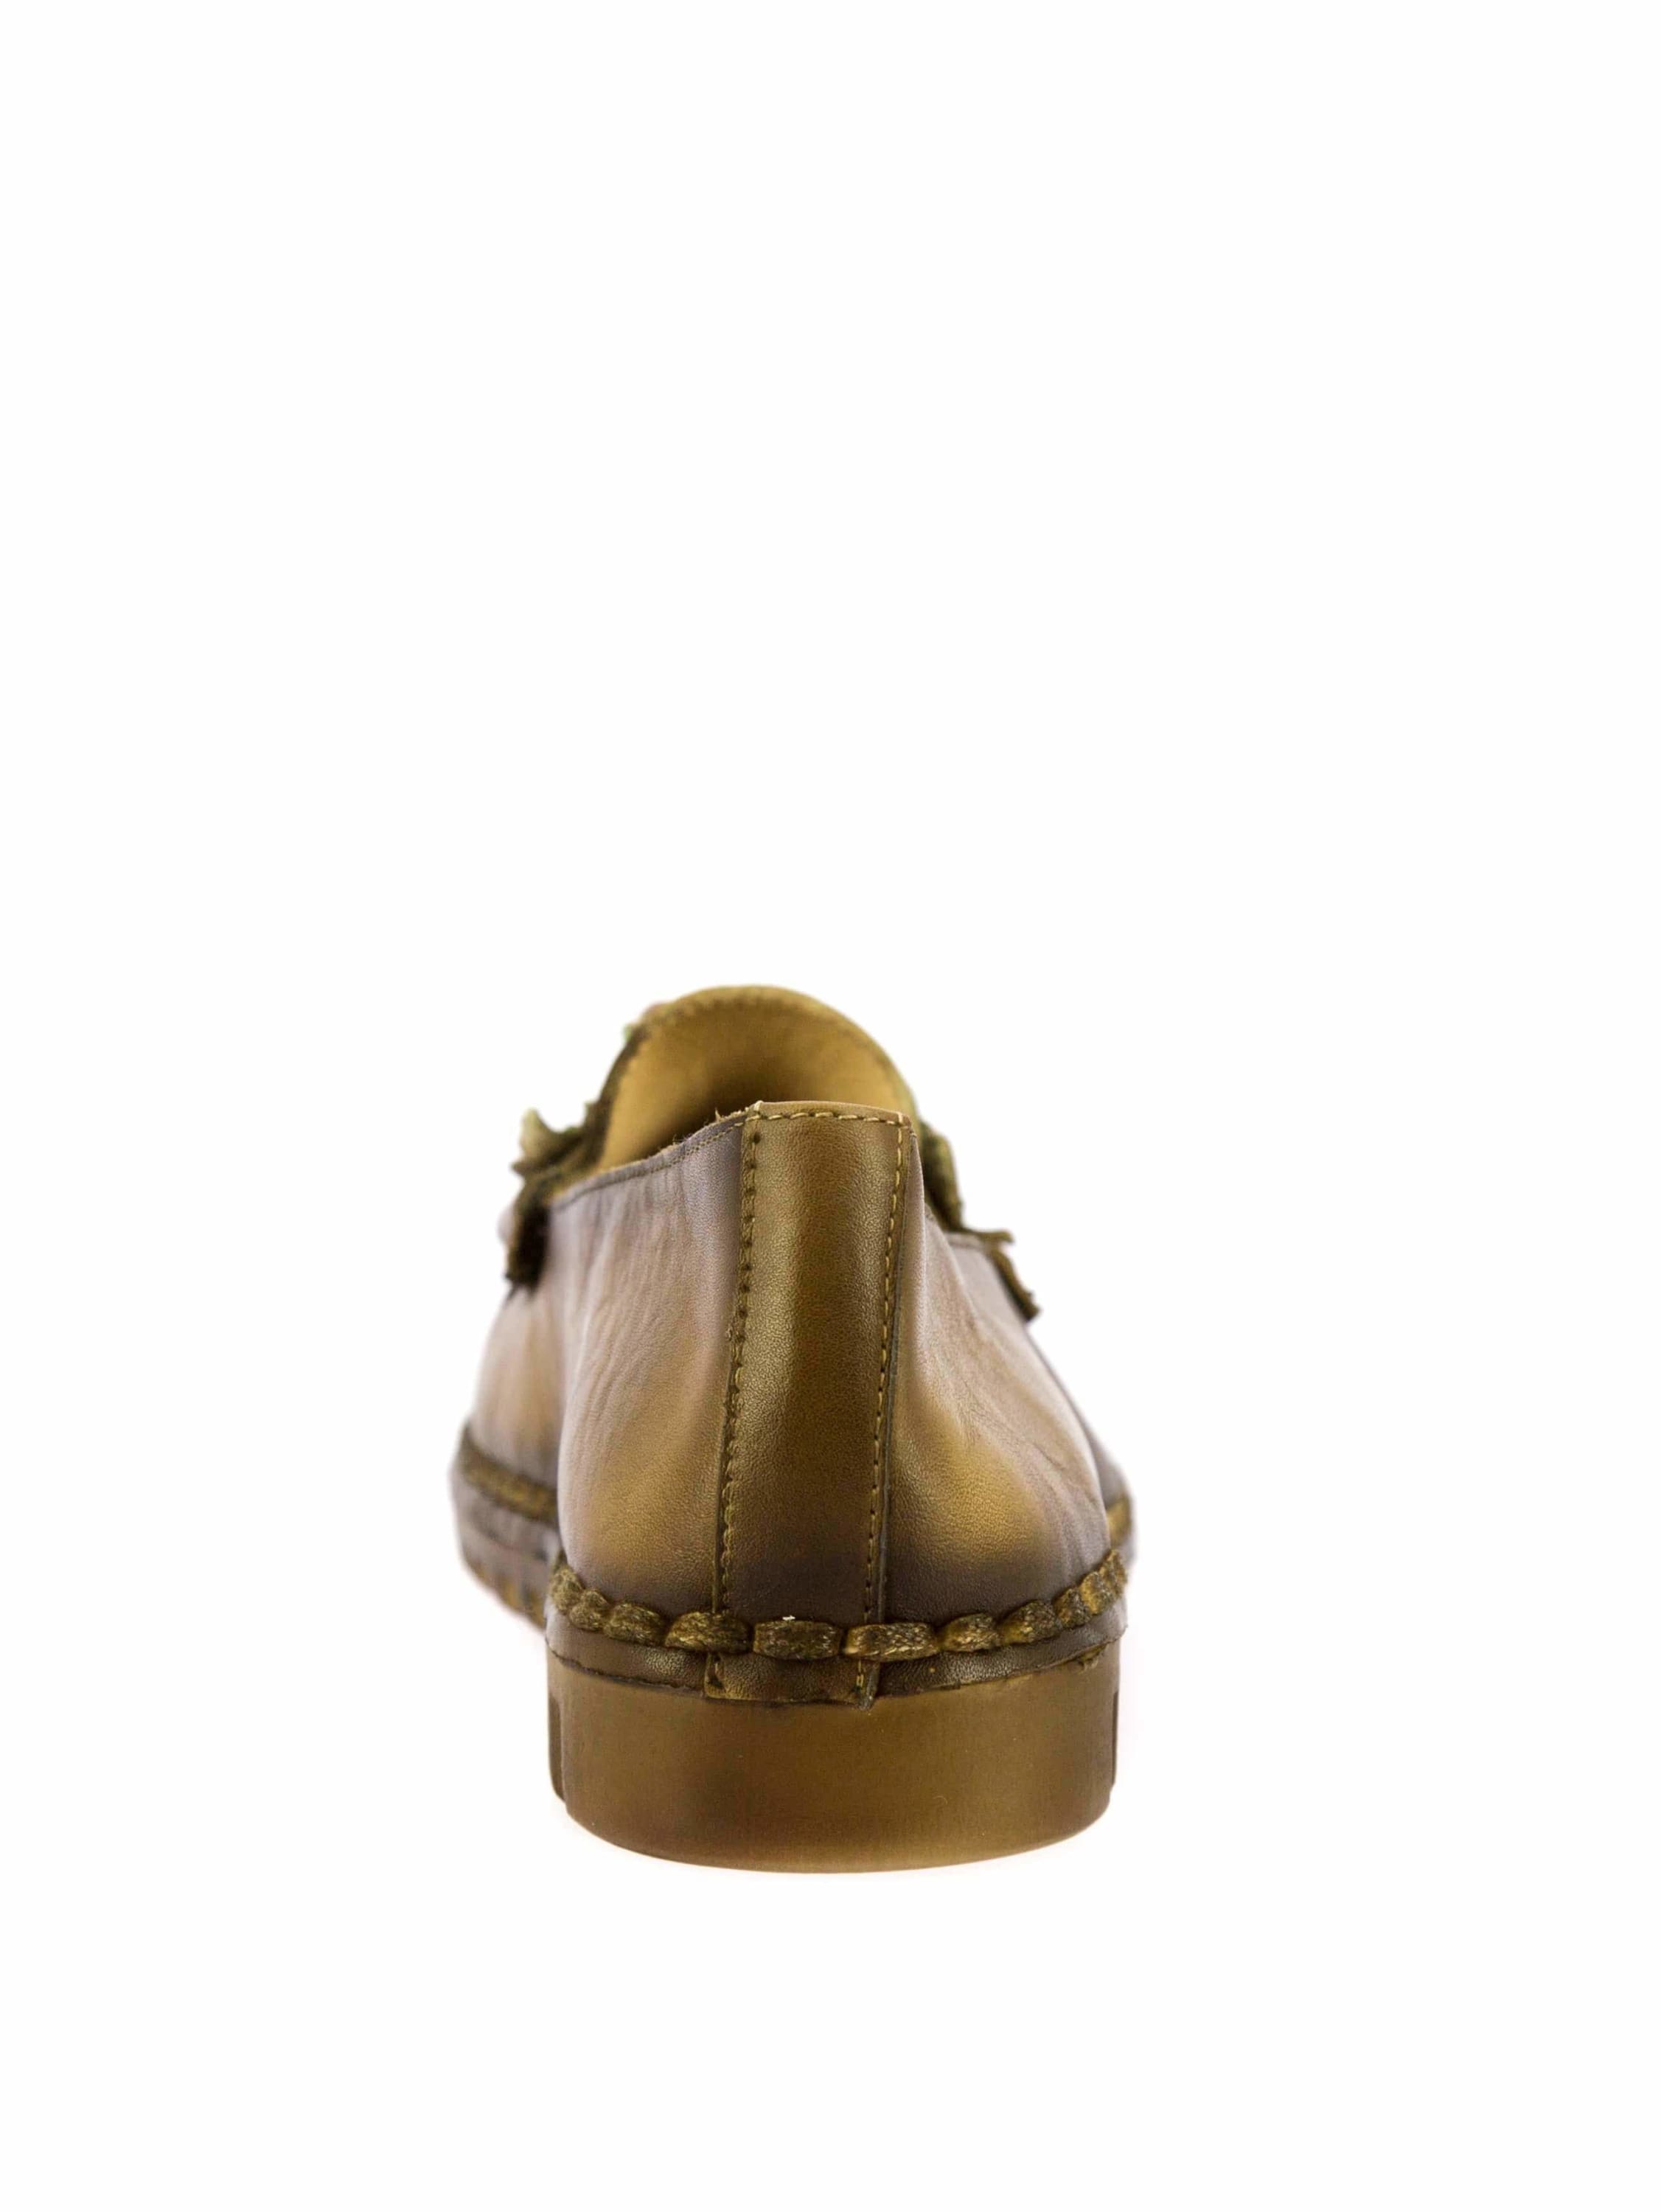 Shoe FLCORINEO03 - Moccasin